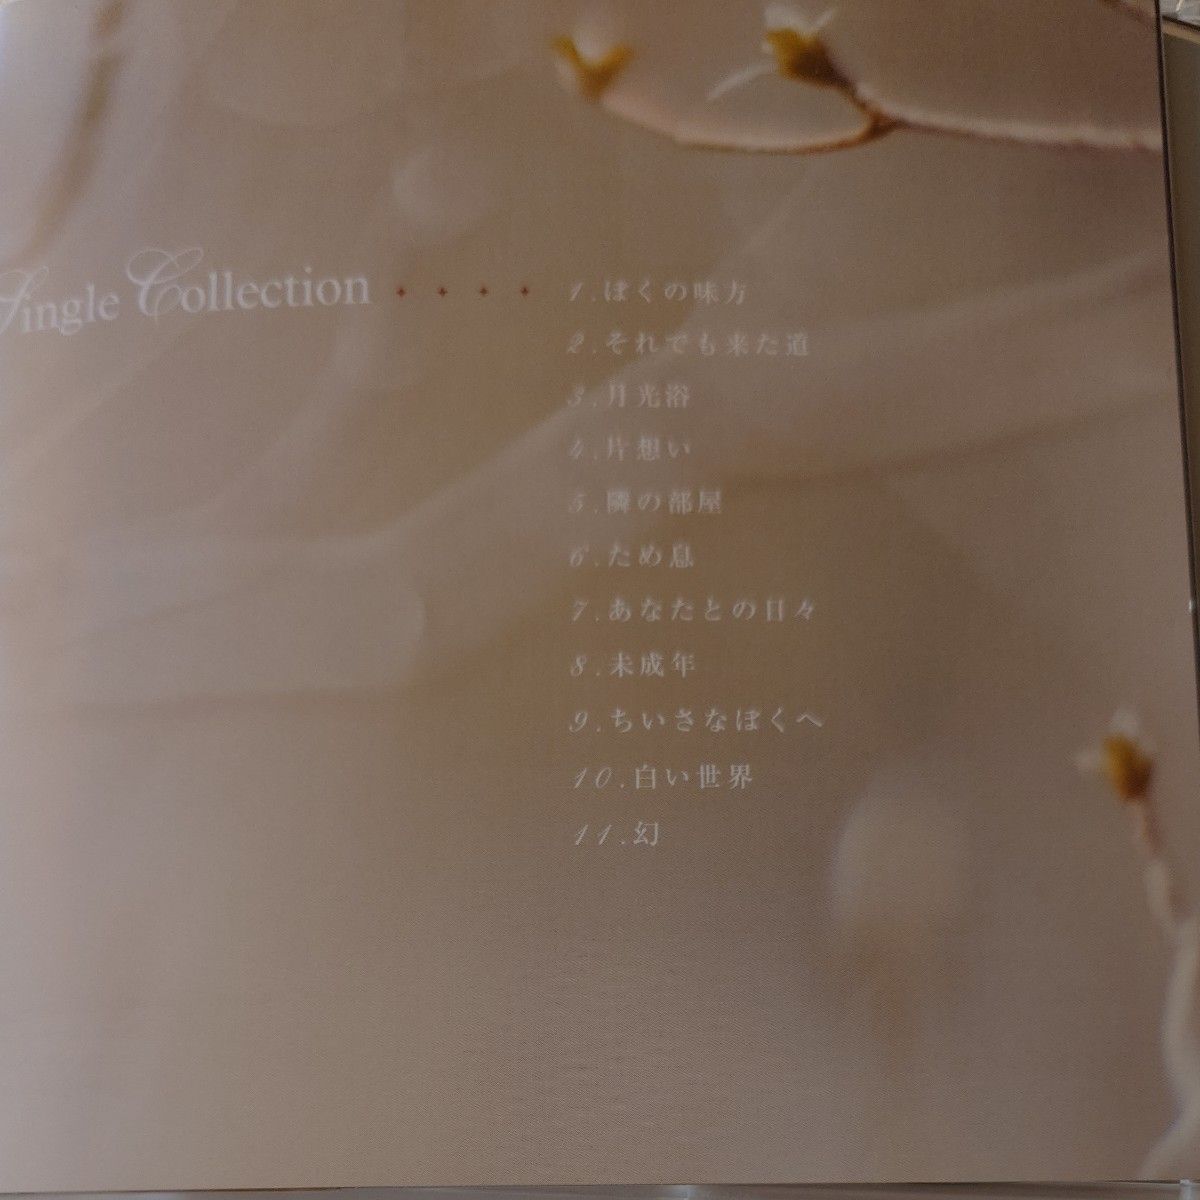 柴田淳CD「SingleCollection」